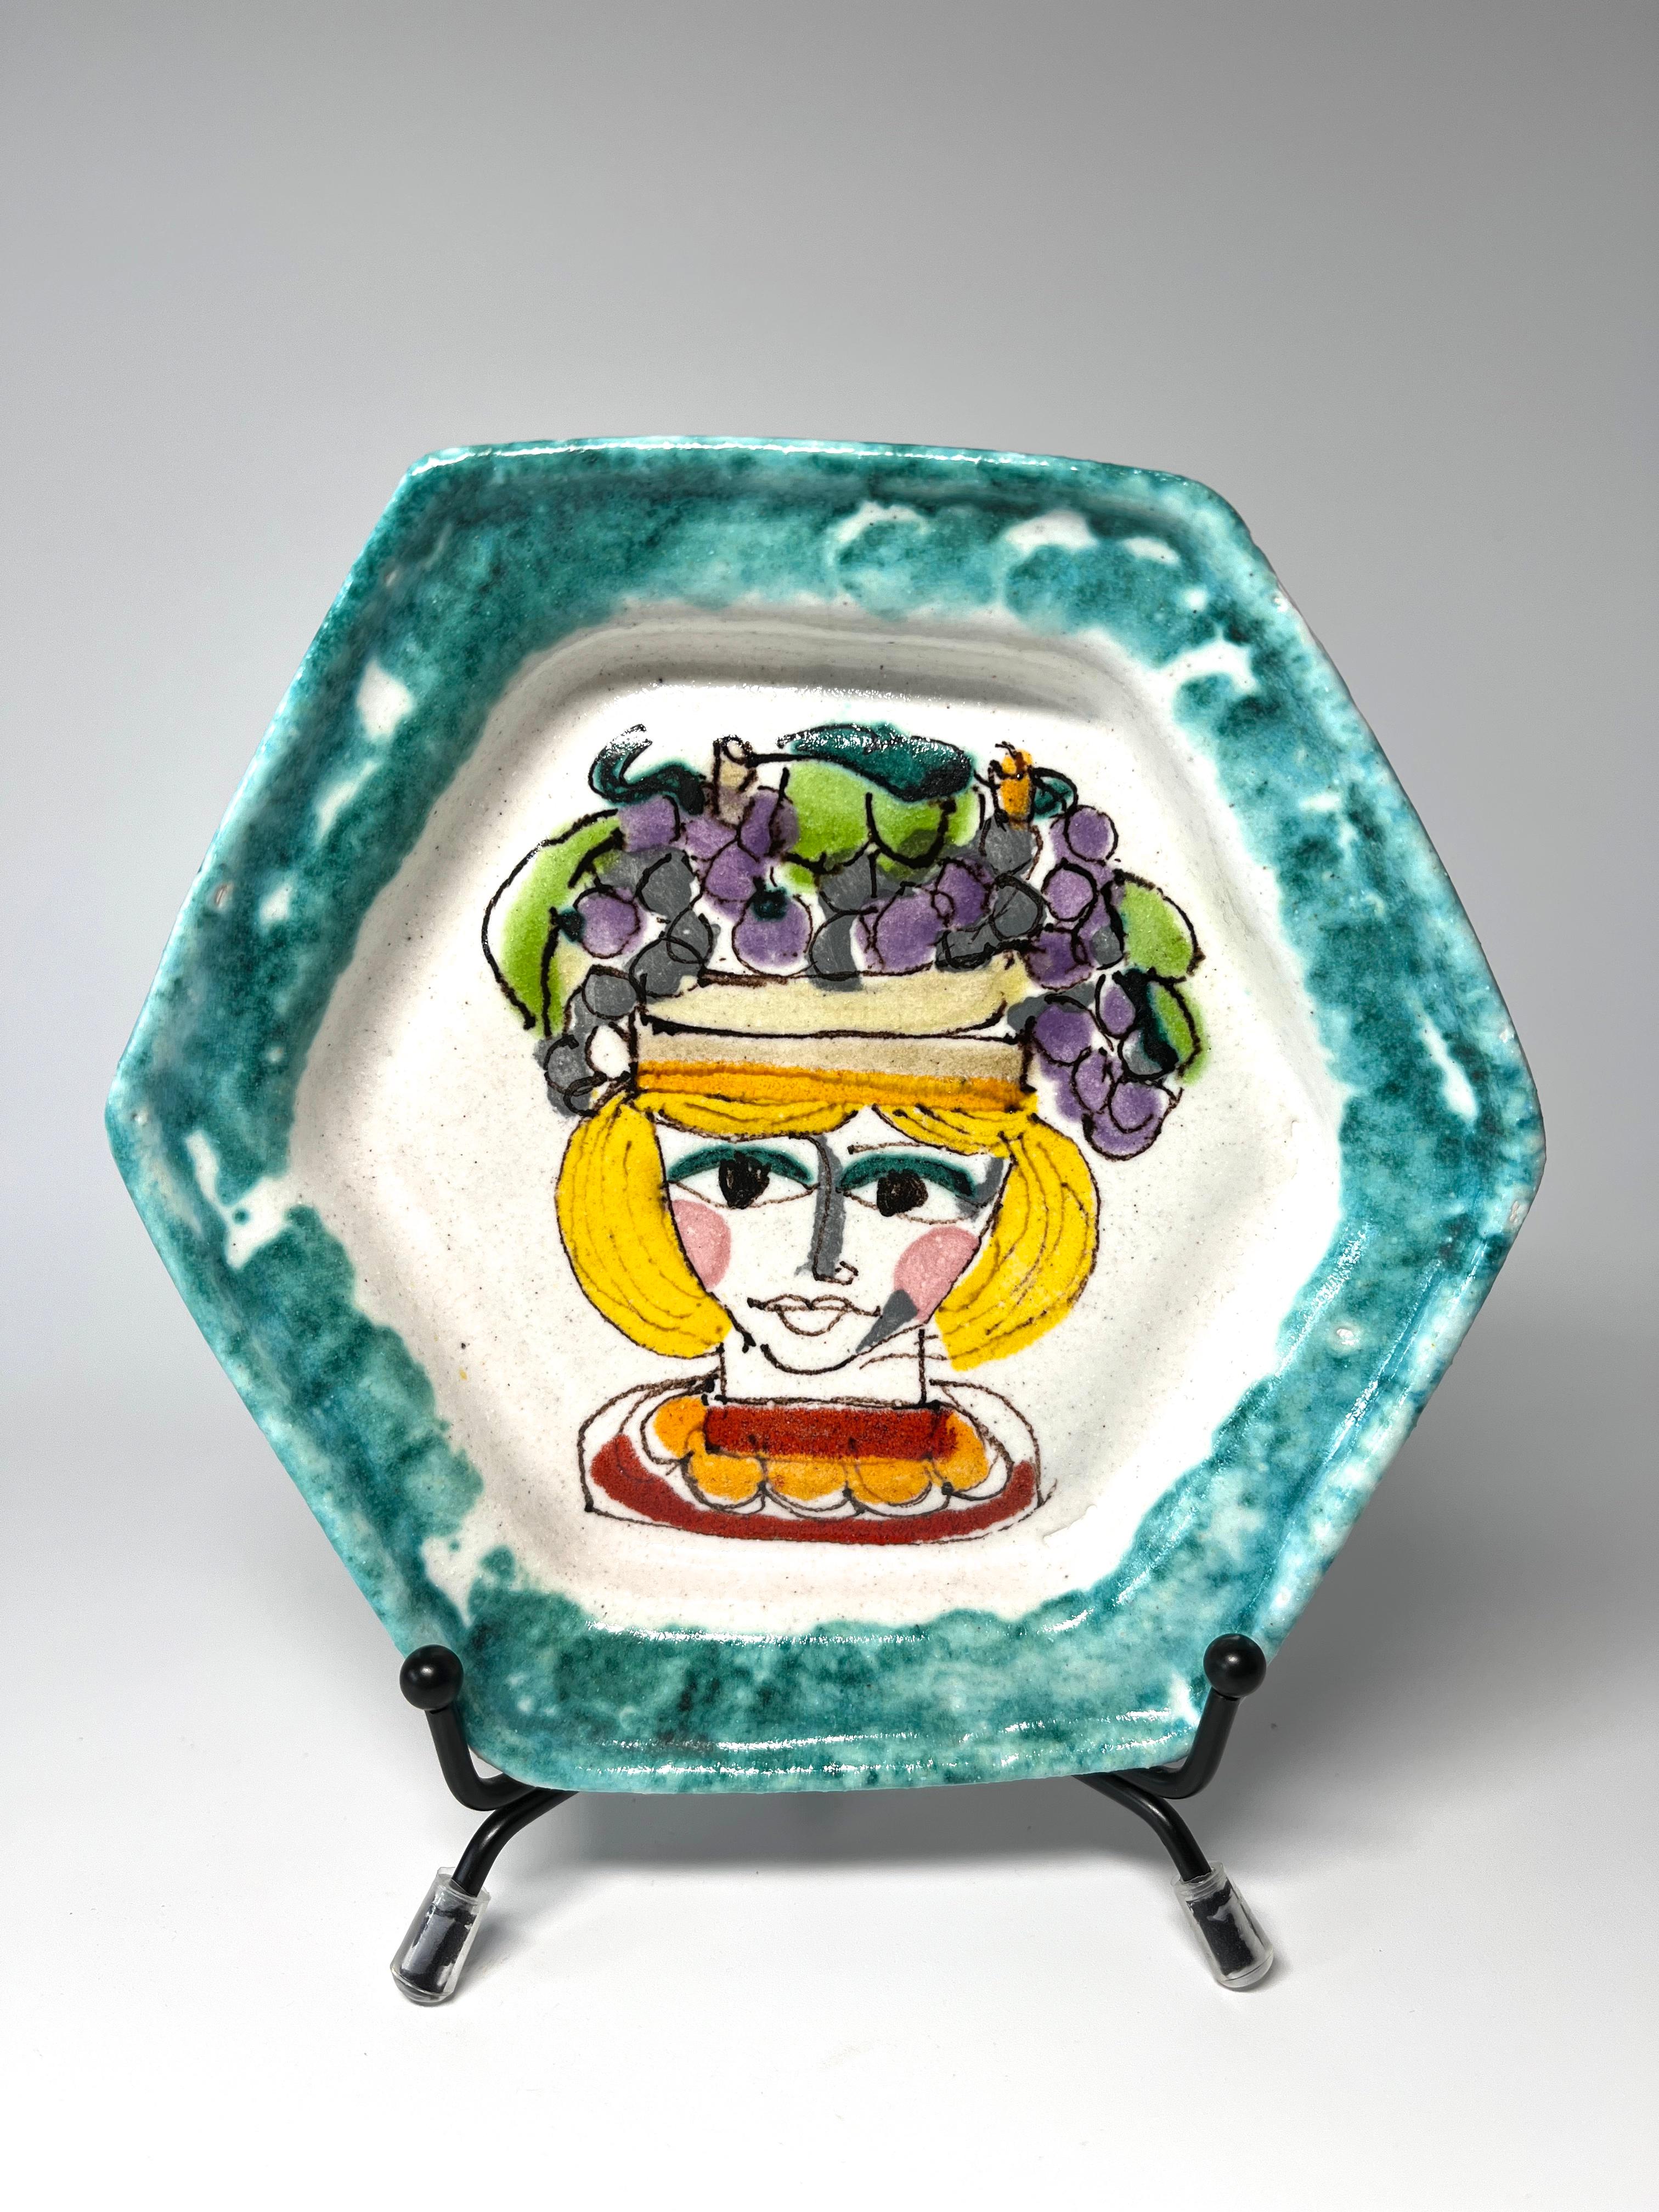 Ravissante petite assiette hexagonale en céramique de DeSimone (Italie)
Décorée à la main d'une femme coiffée d'un chapeau de raisin et bordée d'un bord pointillé vert d'eau.
Circa 1960's
Signé DeSimone, Italie
Hauteur 0,75 pouce, Diamètre 5,5